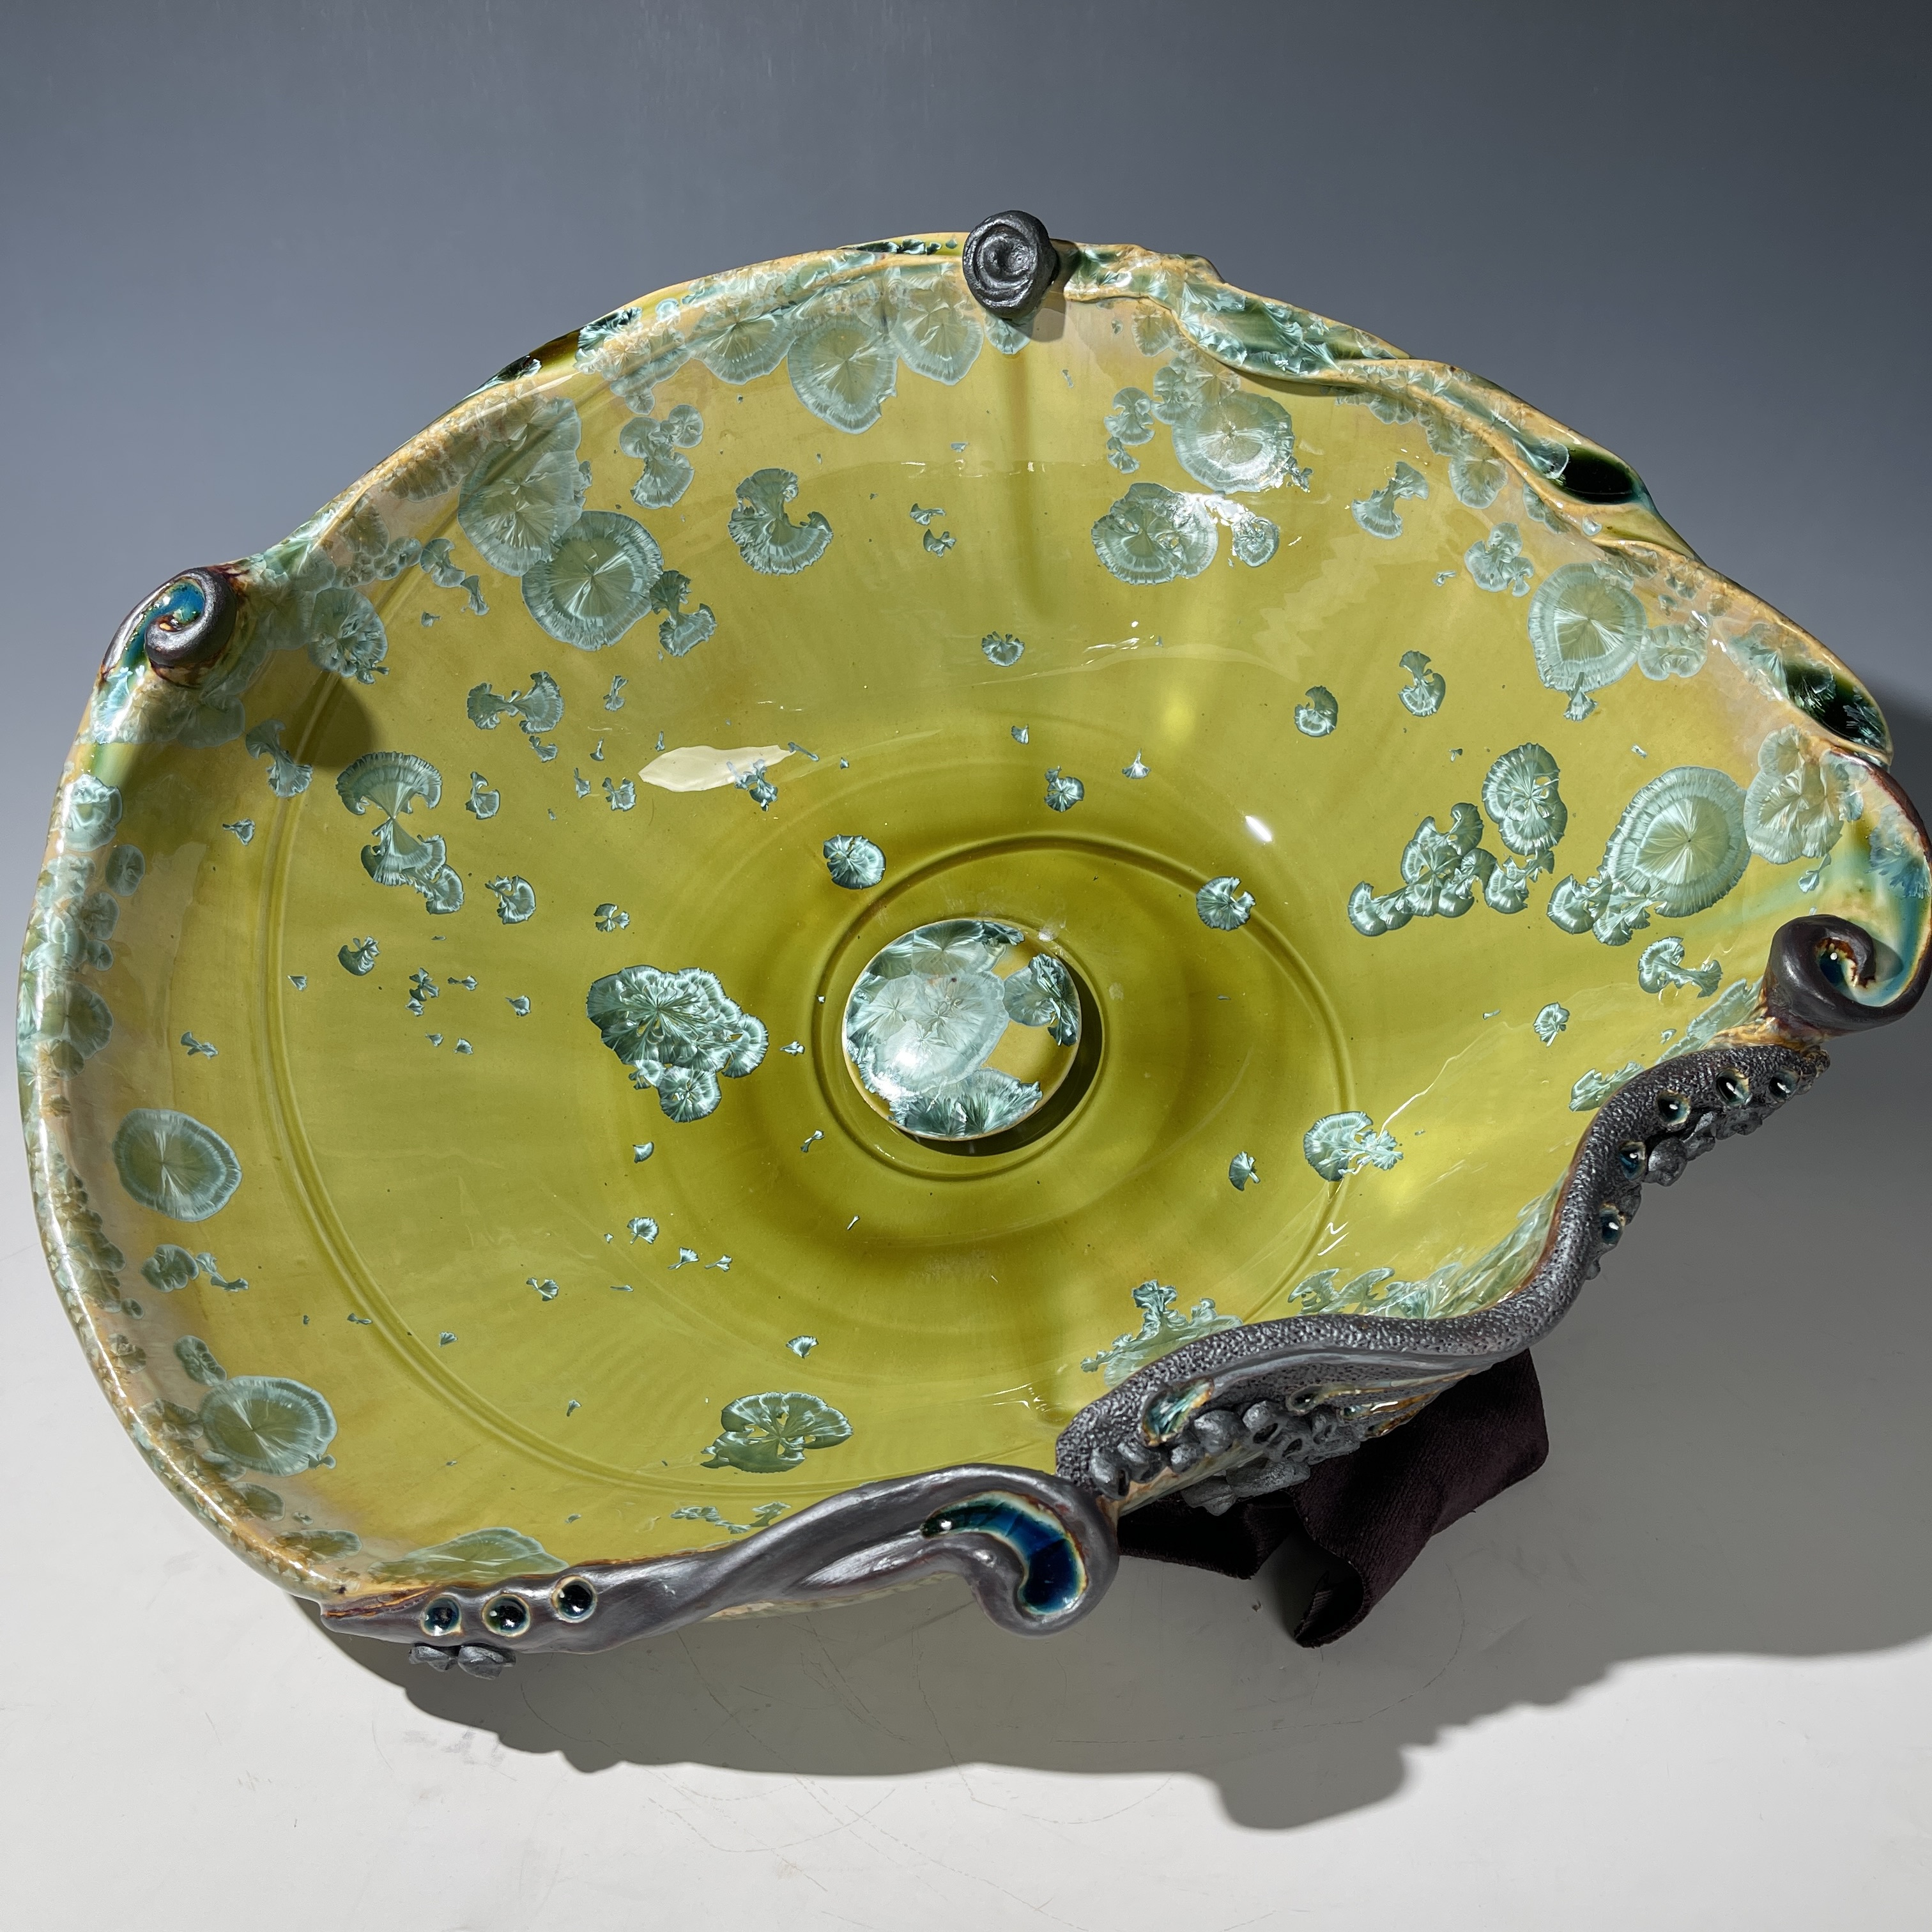 Lavabo con forma ovoide en cristal verde con detalles esculturales arremolinados